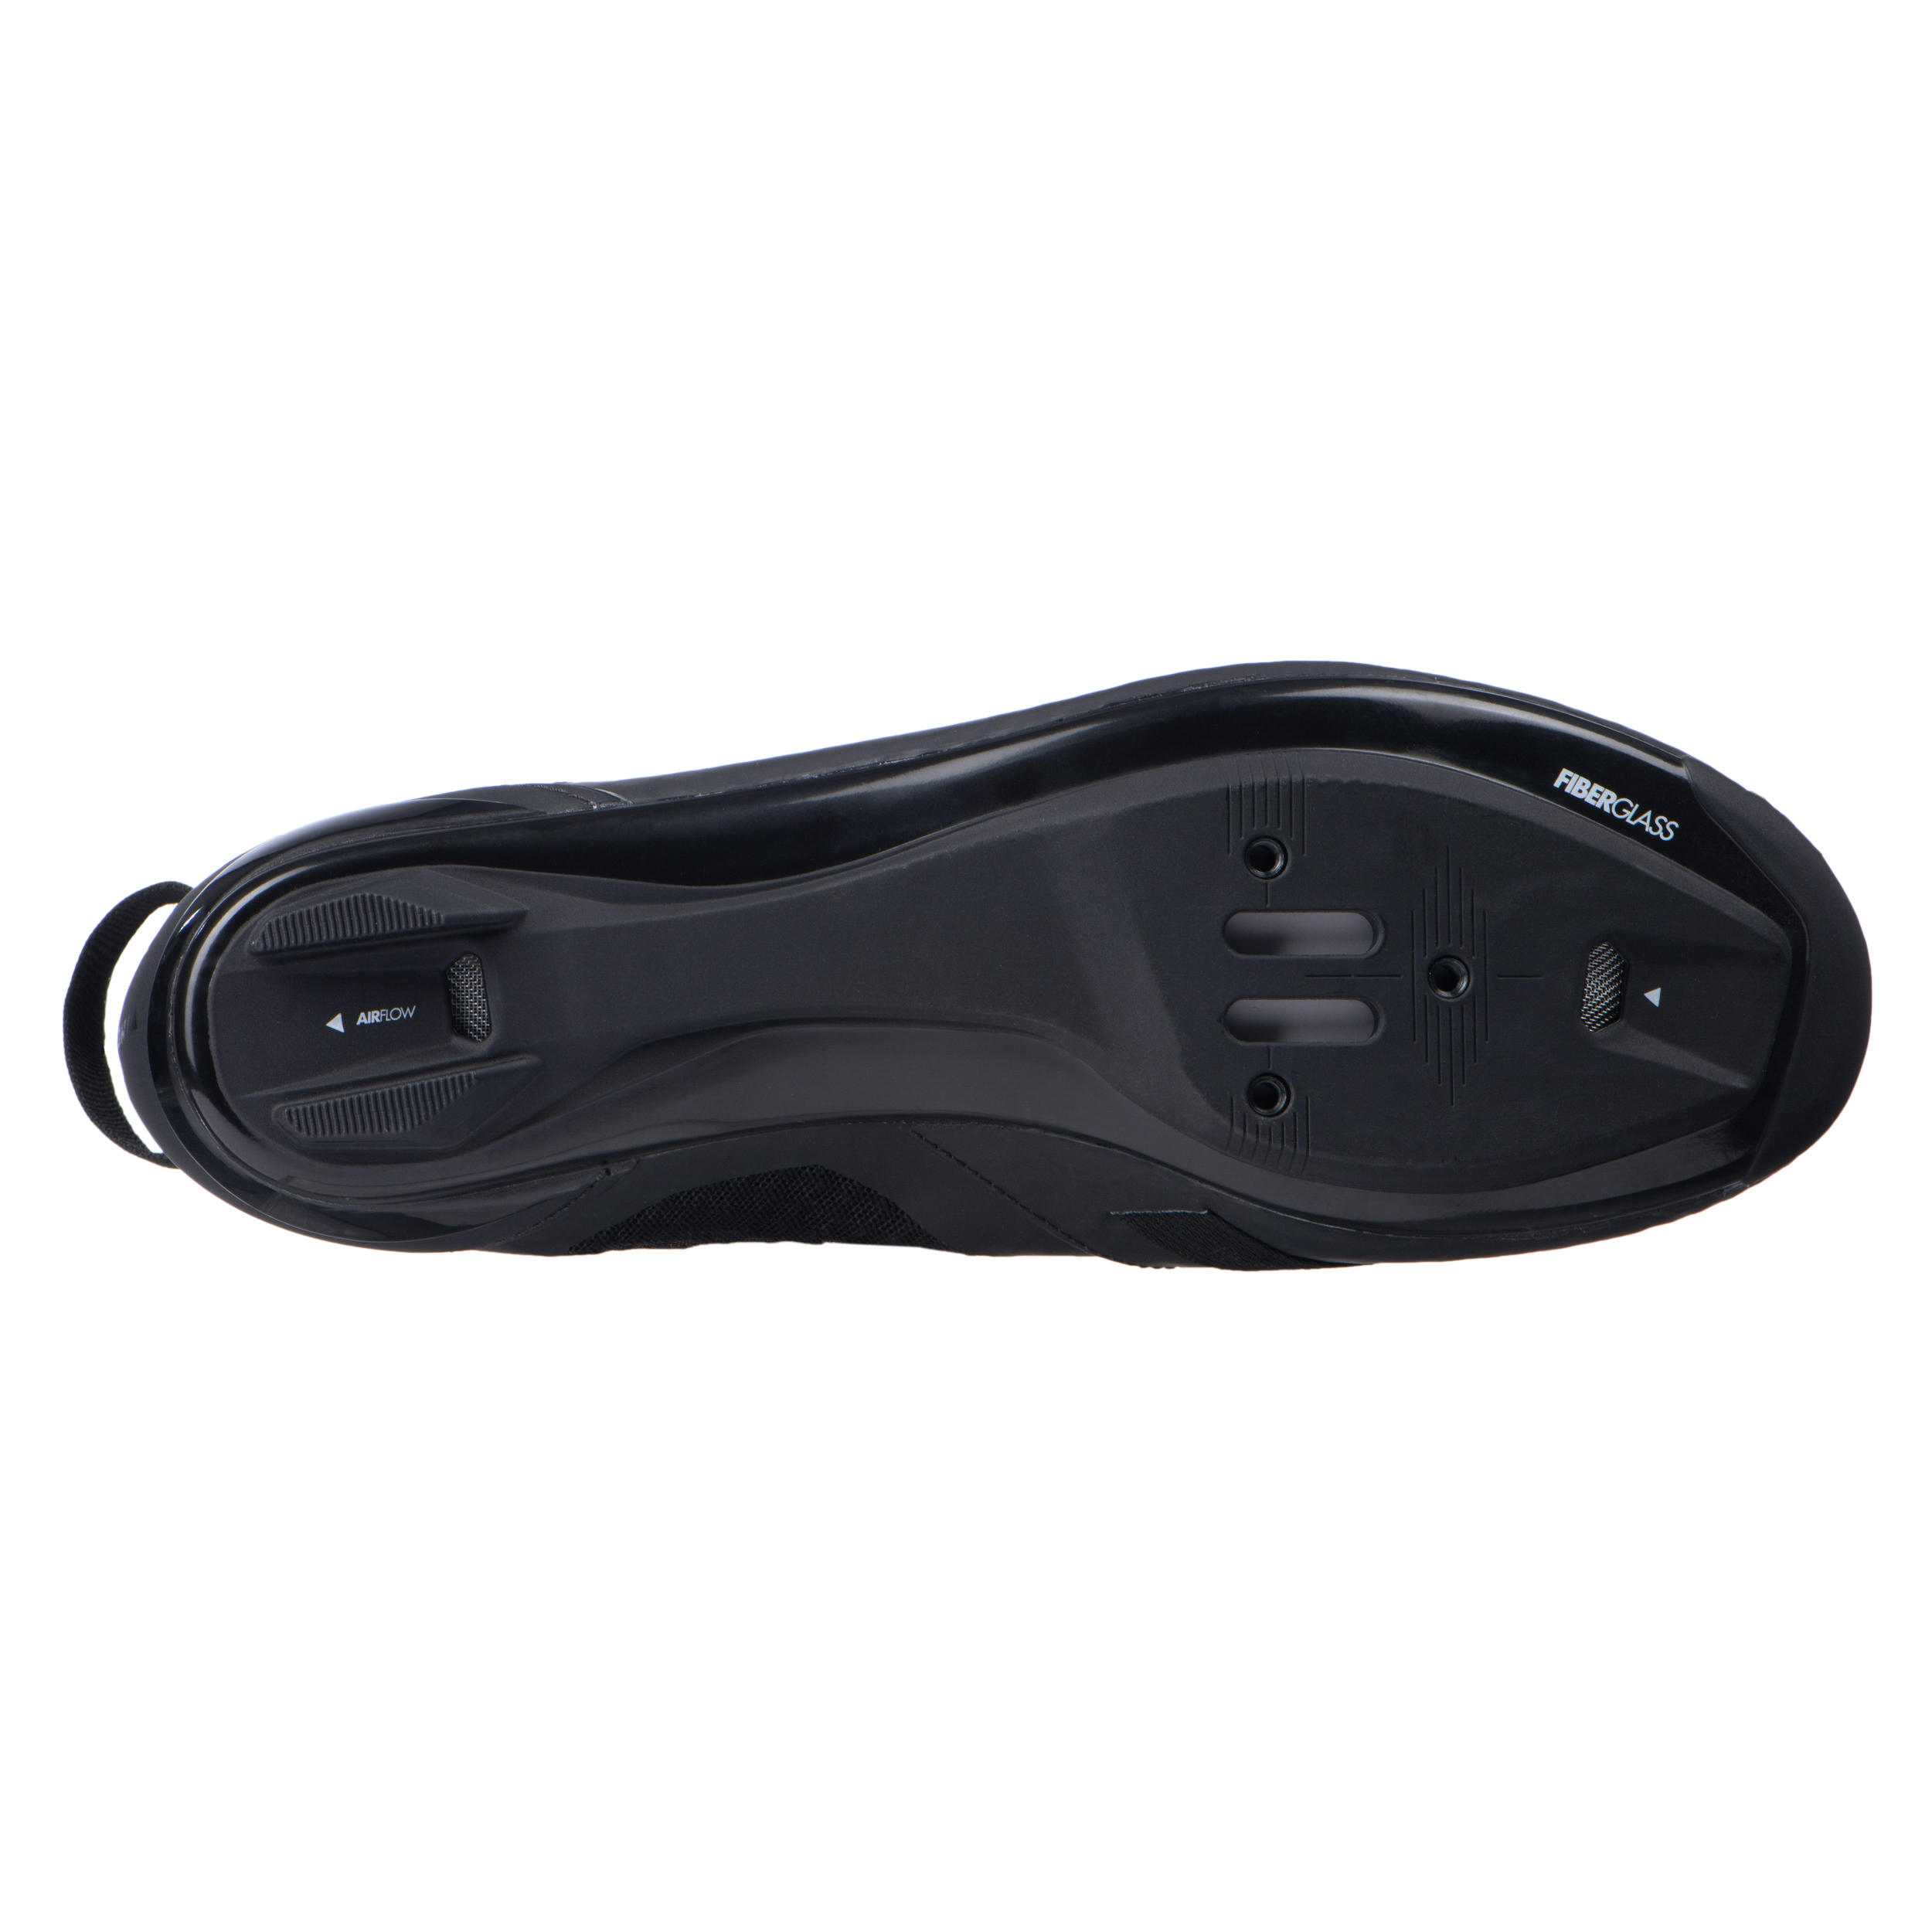 Aptonia Triathlon Cycling Shoes - Black 7/7